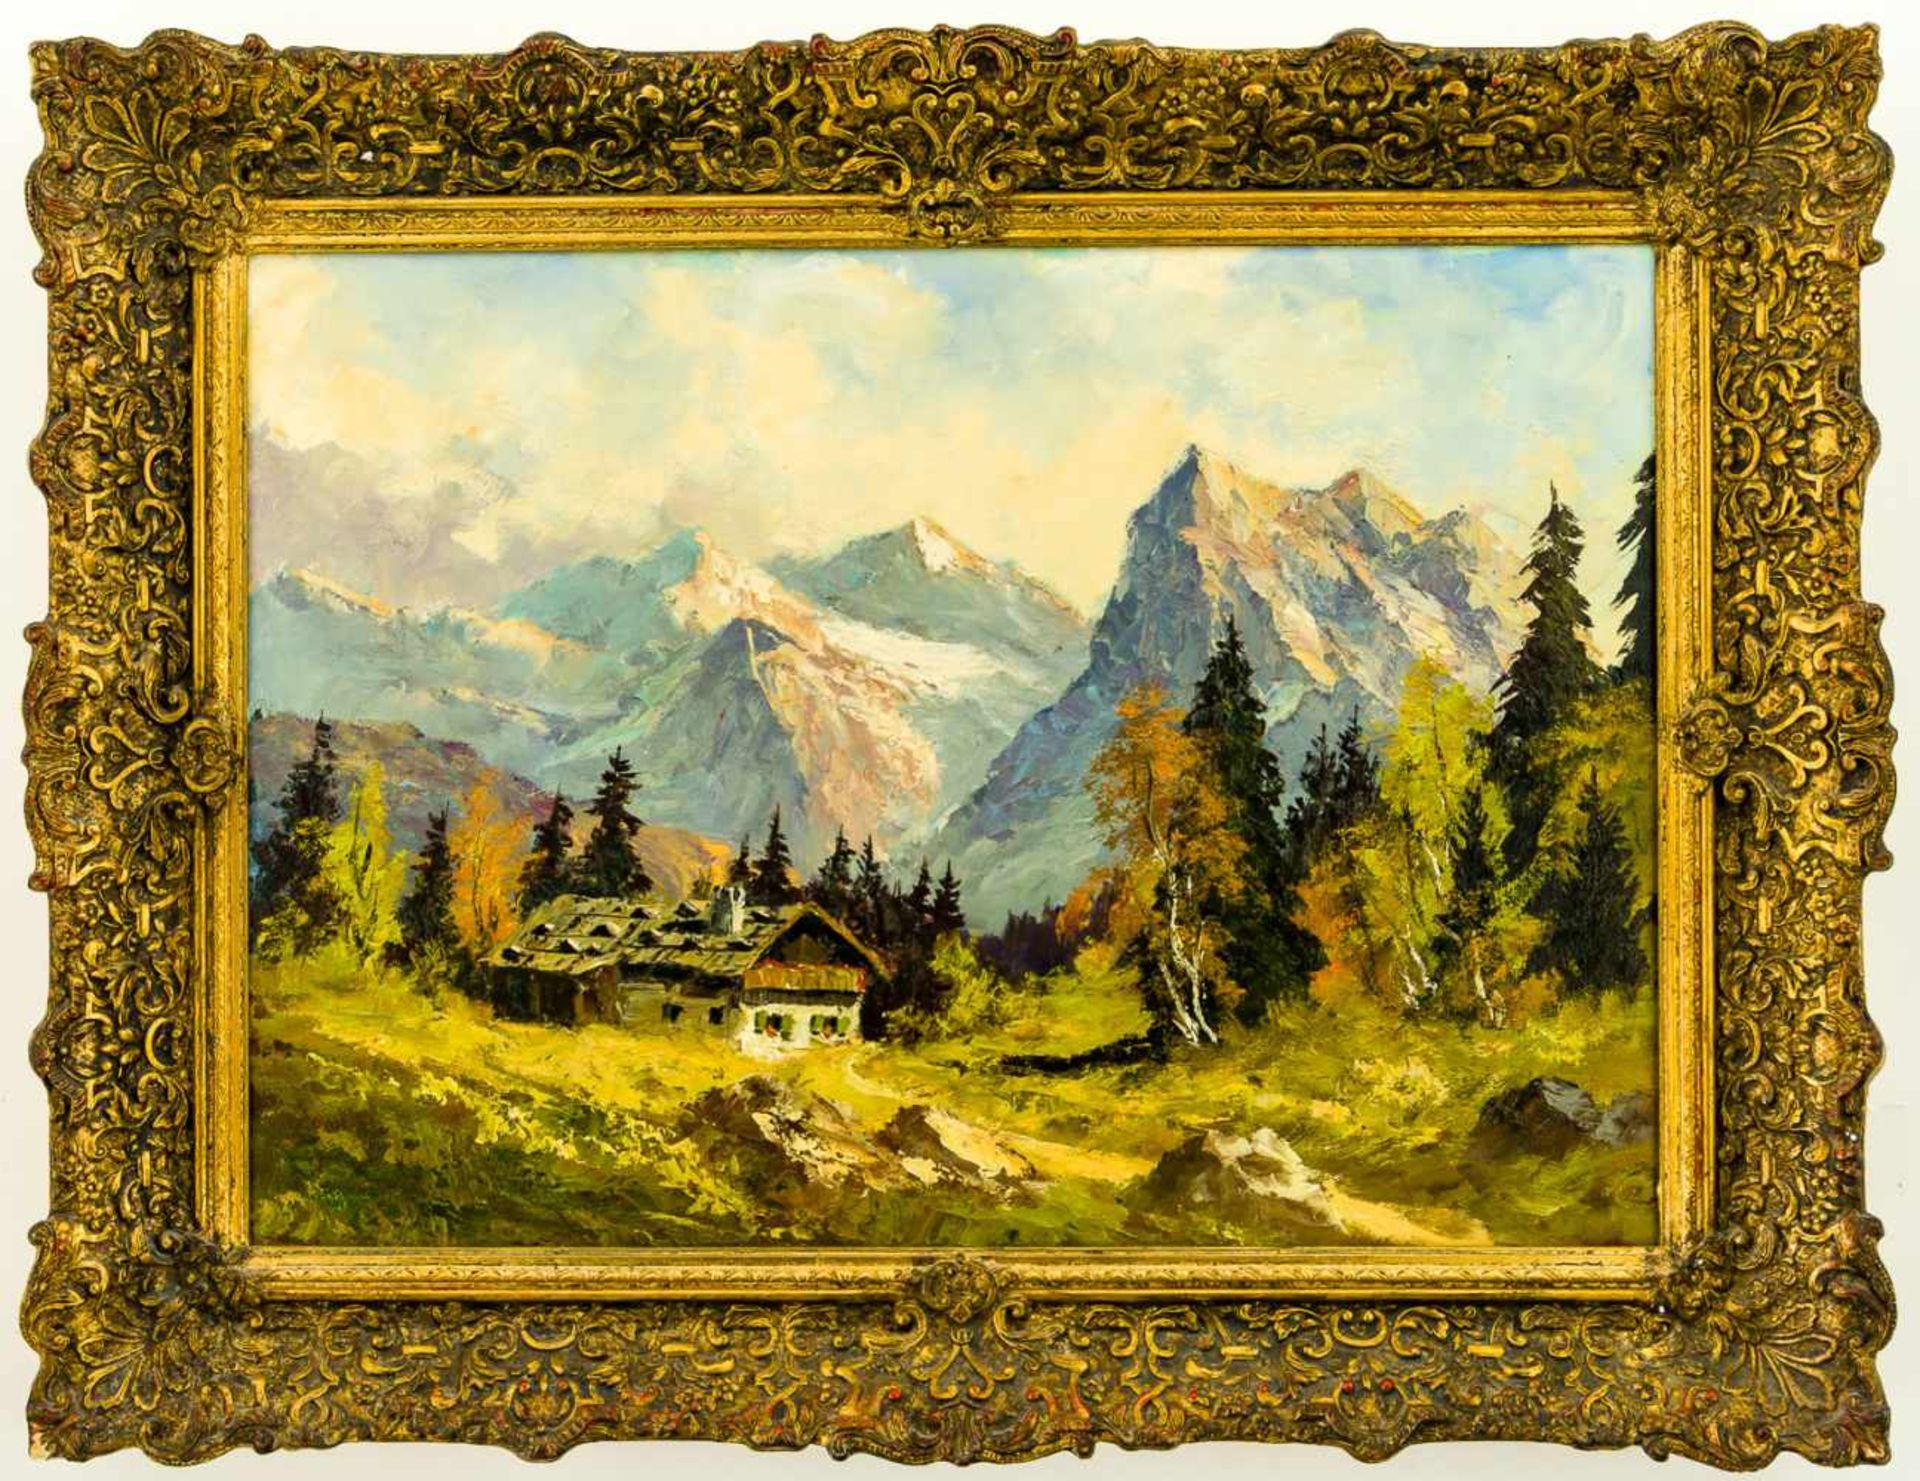 Karwendelgebirge Öl / Leinwand, rückseitig "Georg Kiste" bezeichnet 51 x 70 cm, mit Rahmen 65,5 x 86 - Bild 2 aus 2